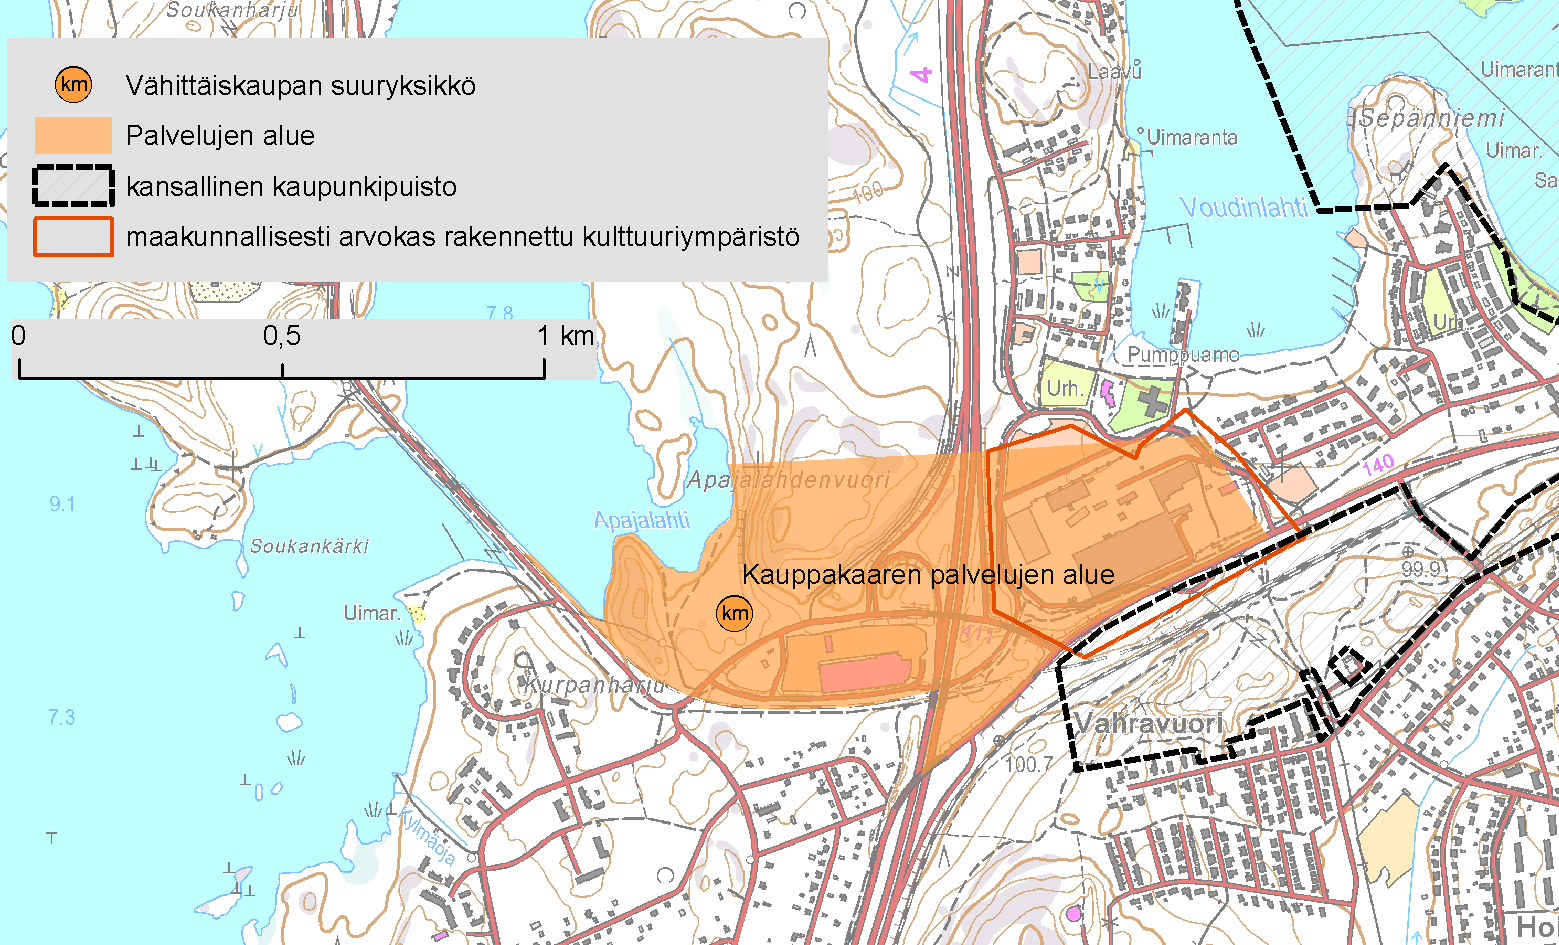 4.3. Kauppakaaren palvelujen alue, Heinola Kauppakaaren palvelujen alueen itäosan eteläpuolella Vahravuorella sijaitsee Heinolan kansalliseen kaupunkipuistoon kuuluva alue (Kuva 21).